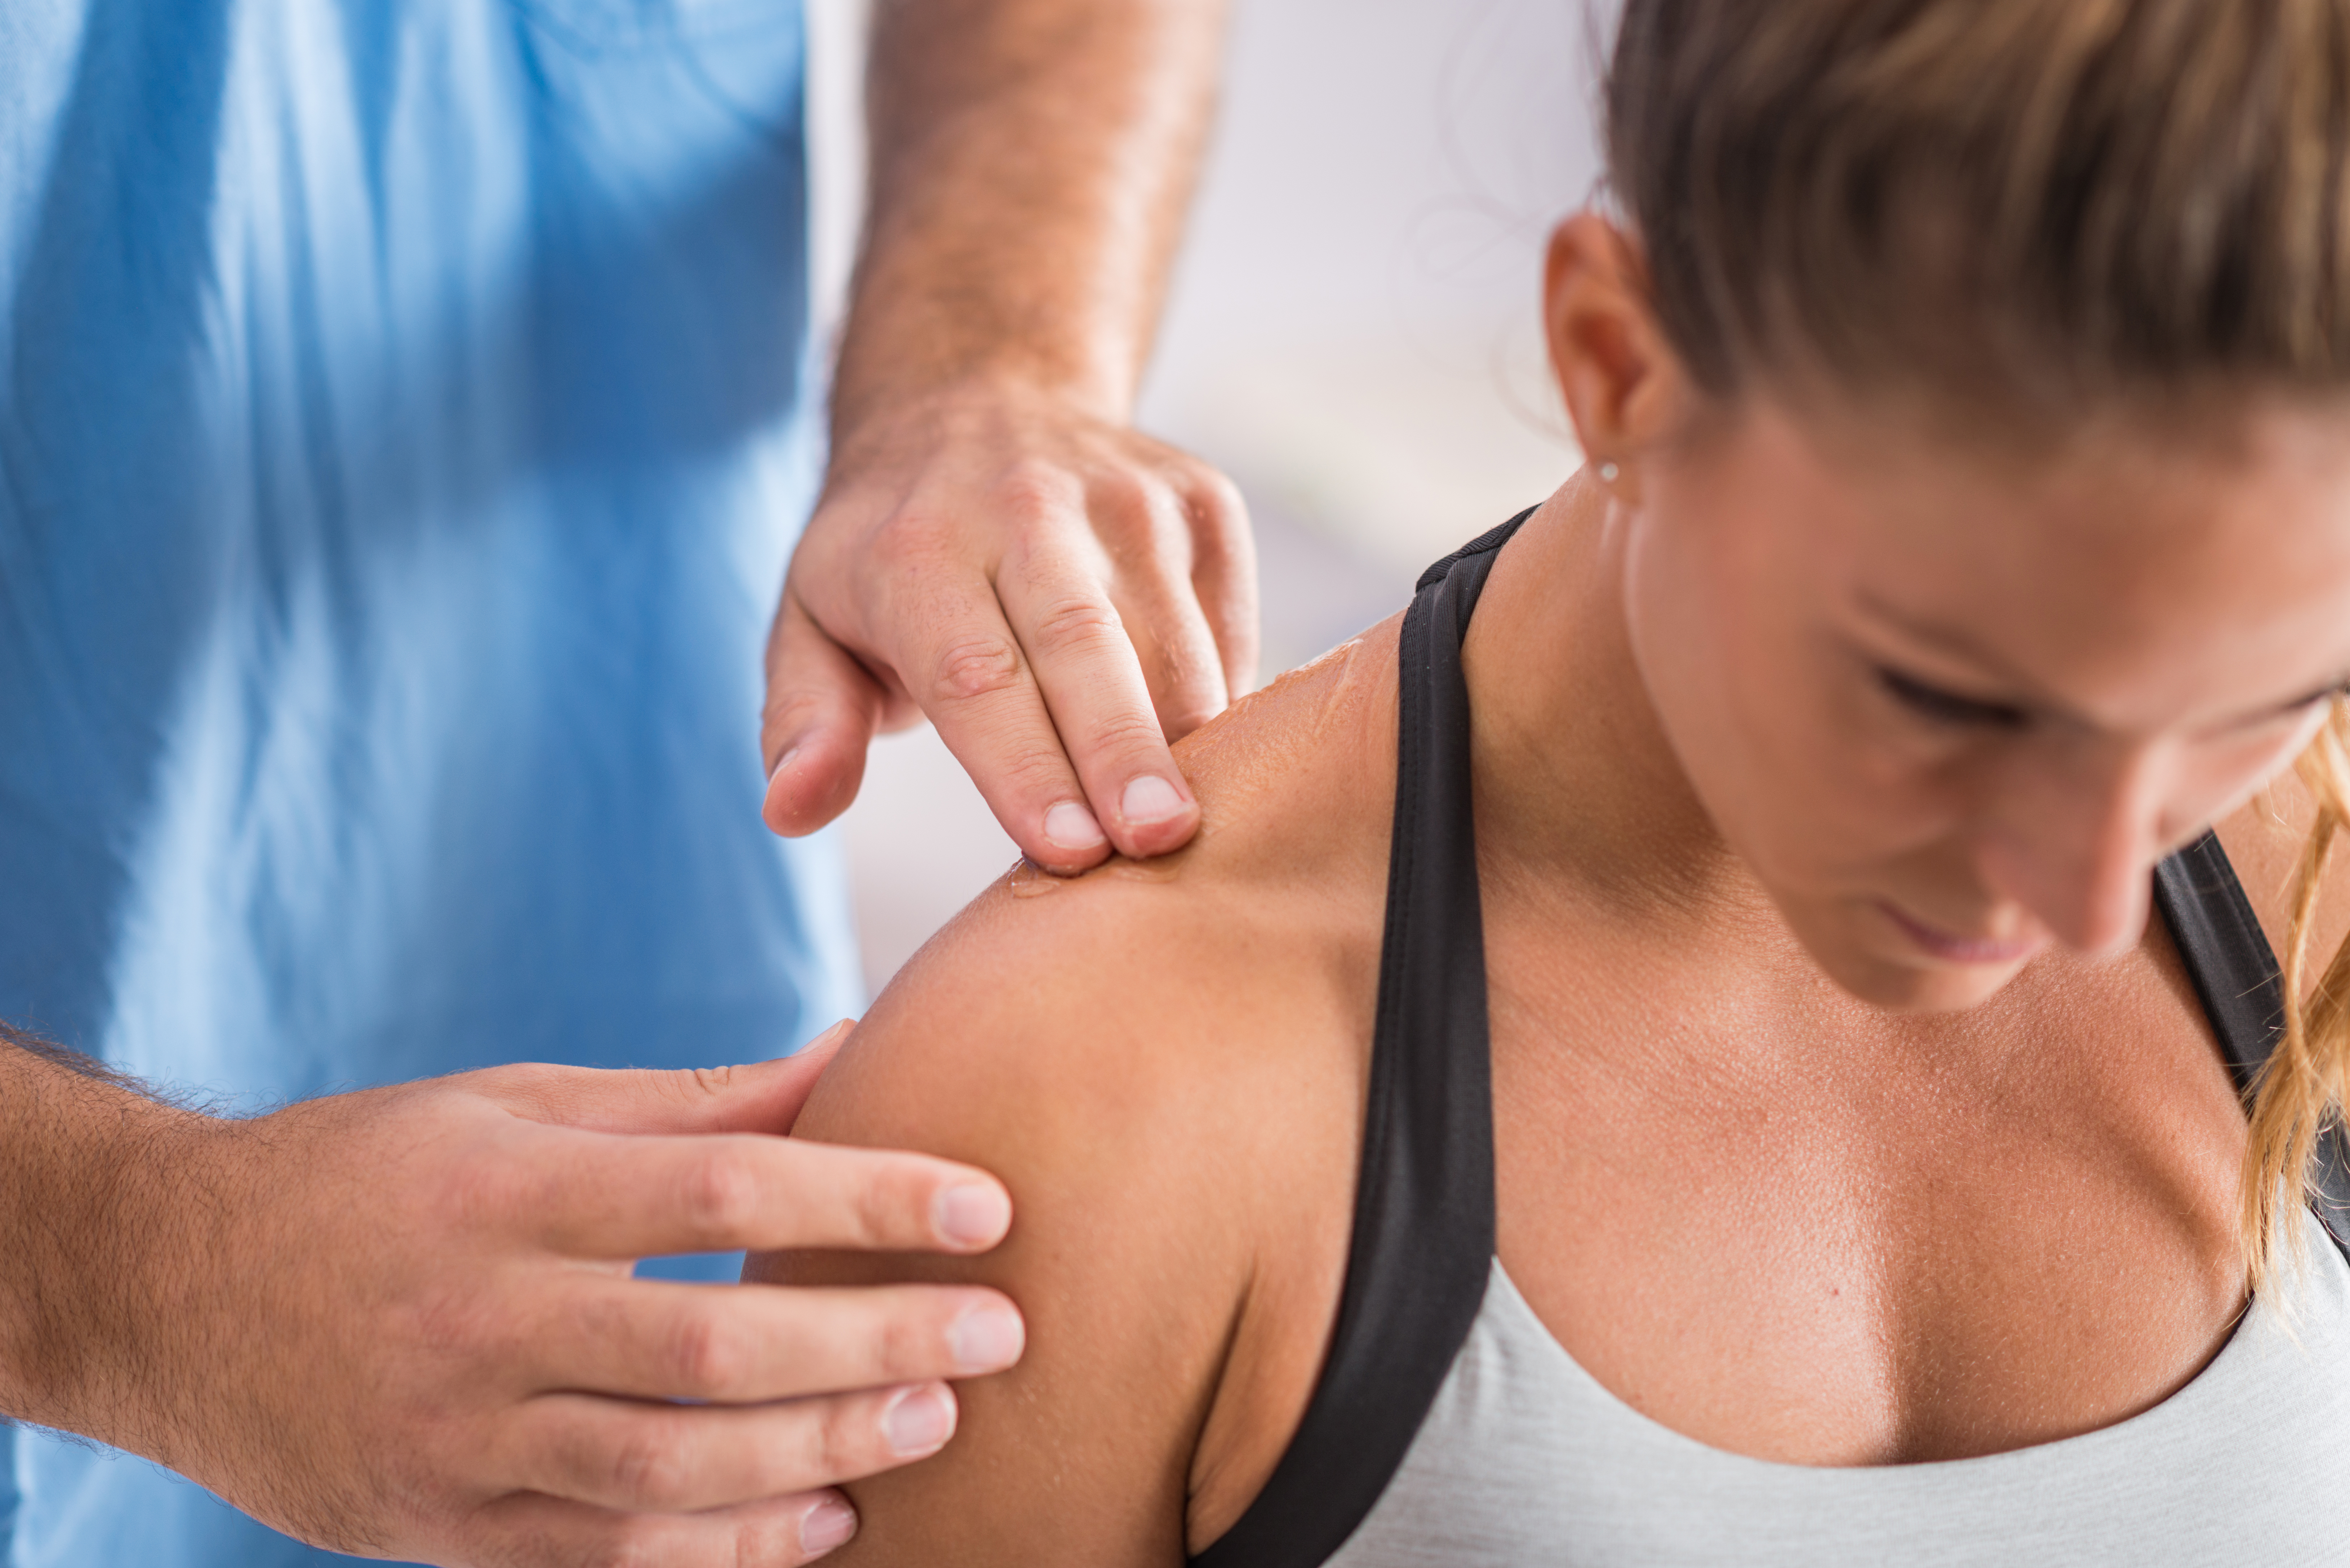 Trapezius Pain: Causes & Treatment - Shoulder Pain Explained